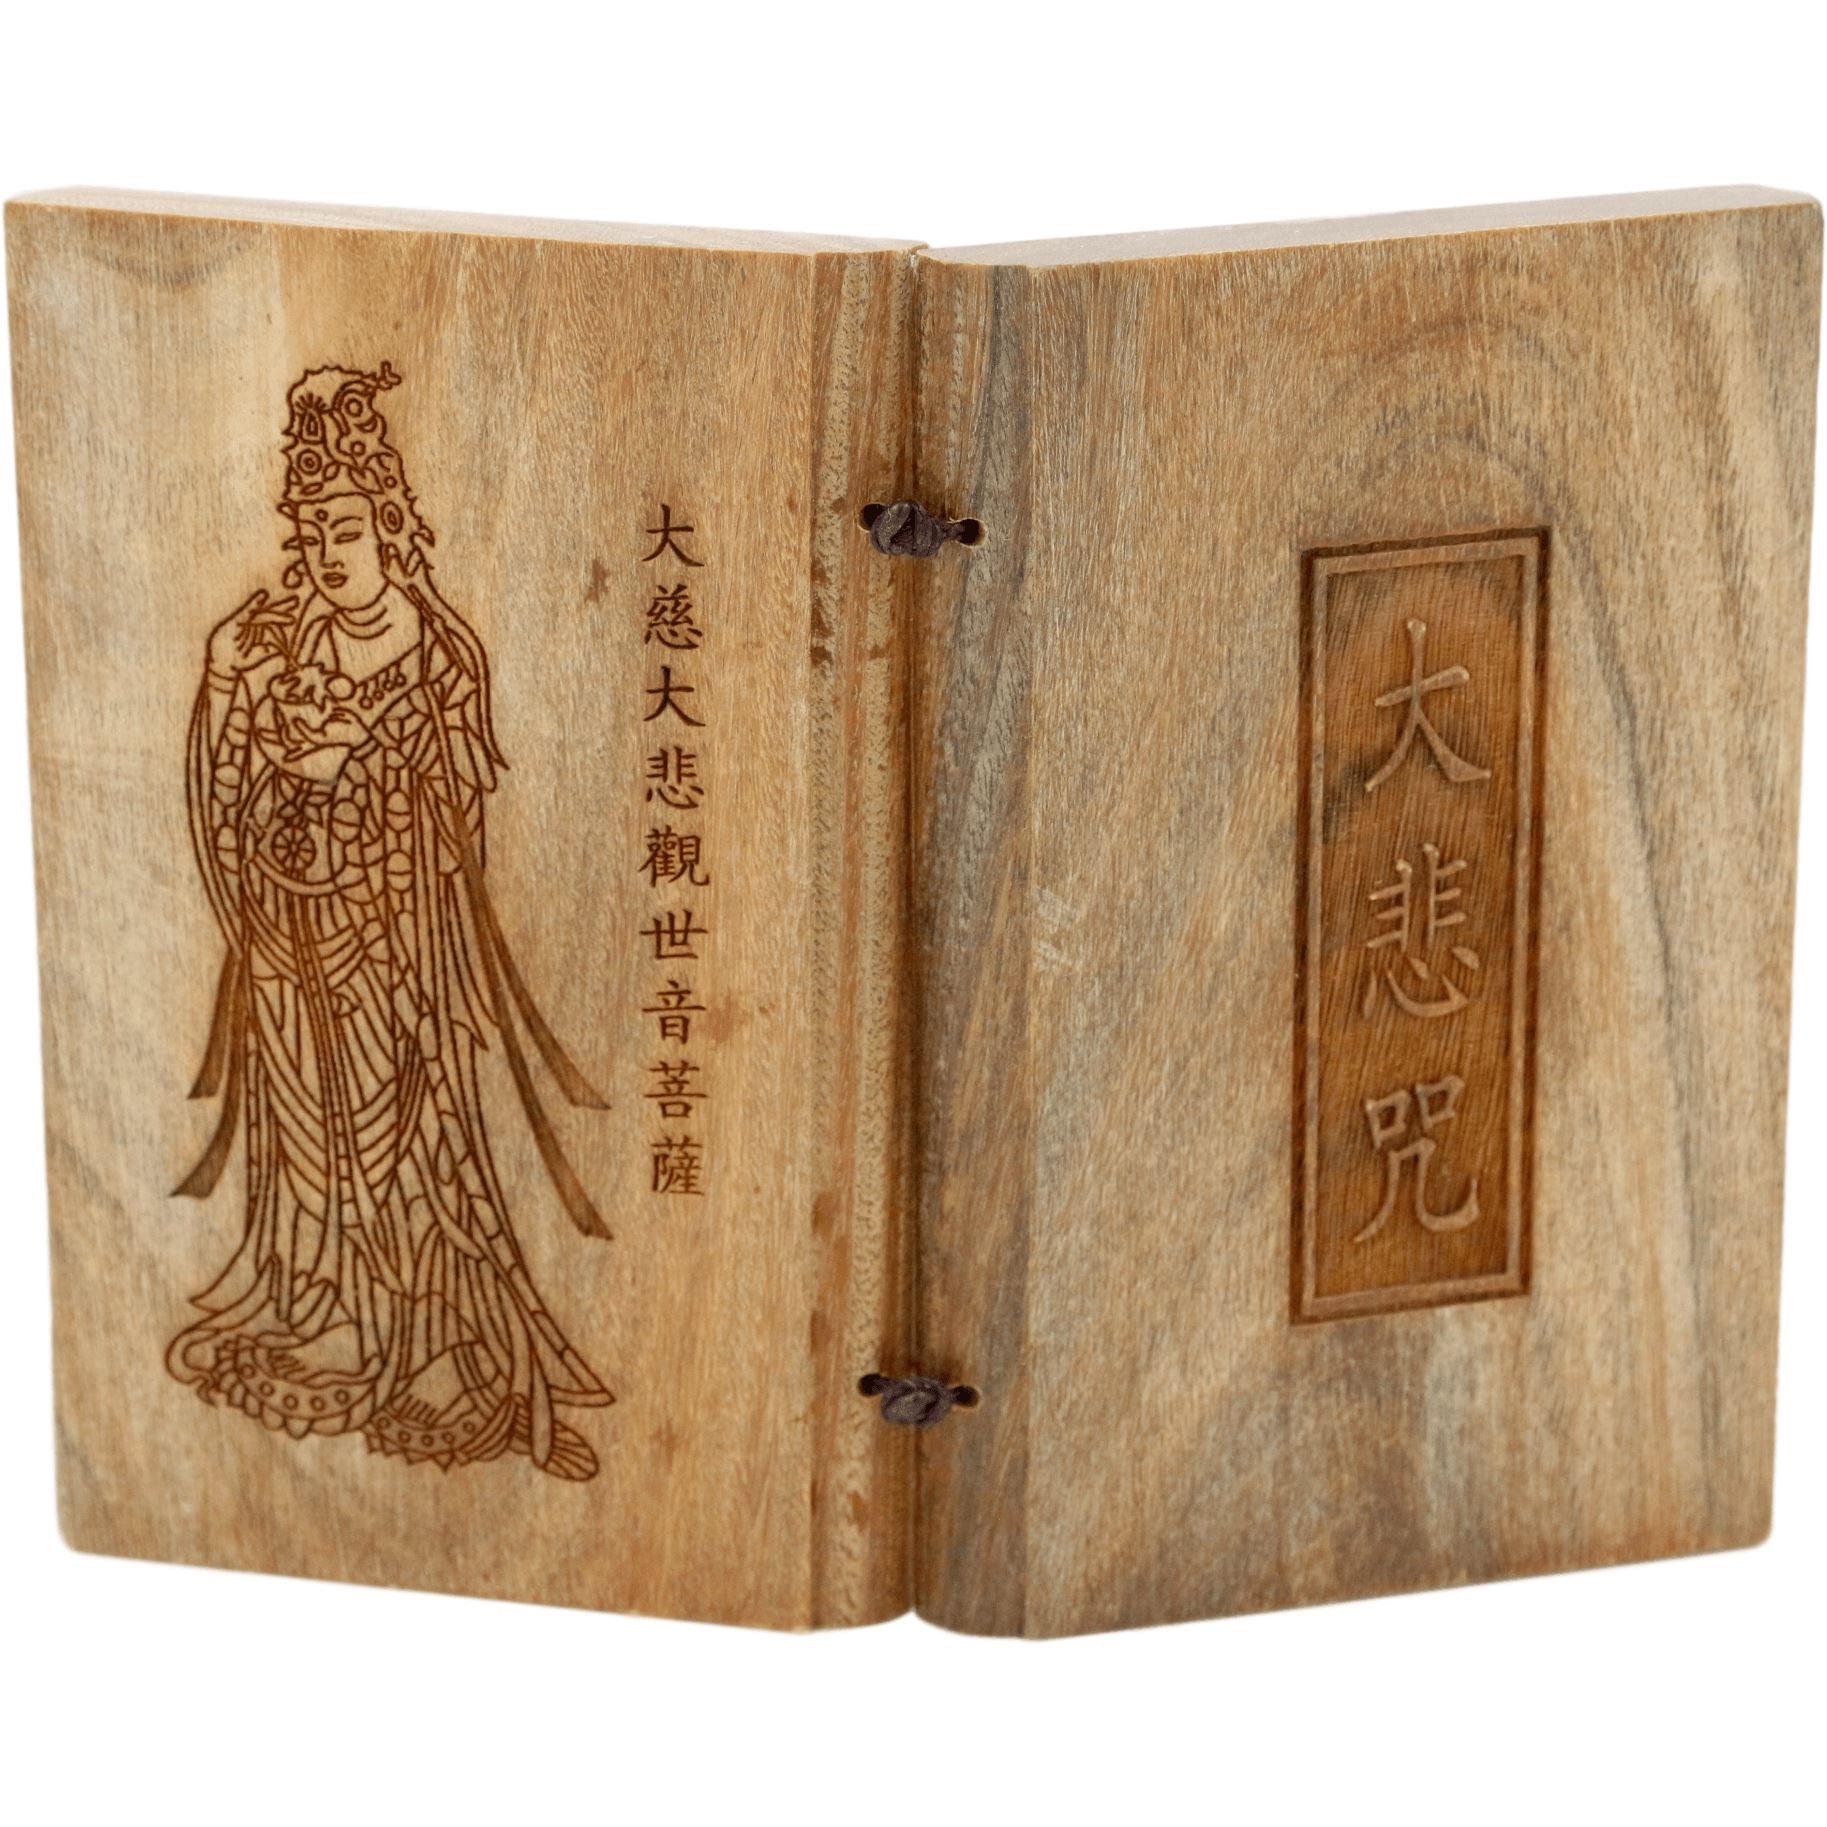 Mantra de la gran compasión (Om maṇi padme hūm) - Tabletas de madera de sándalo